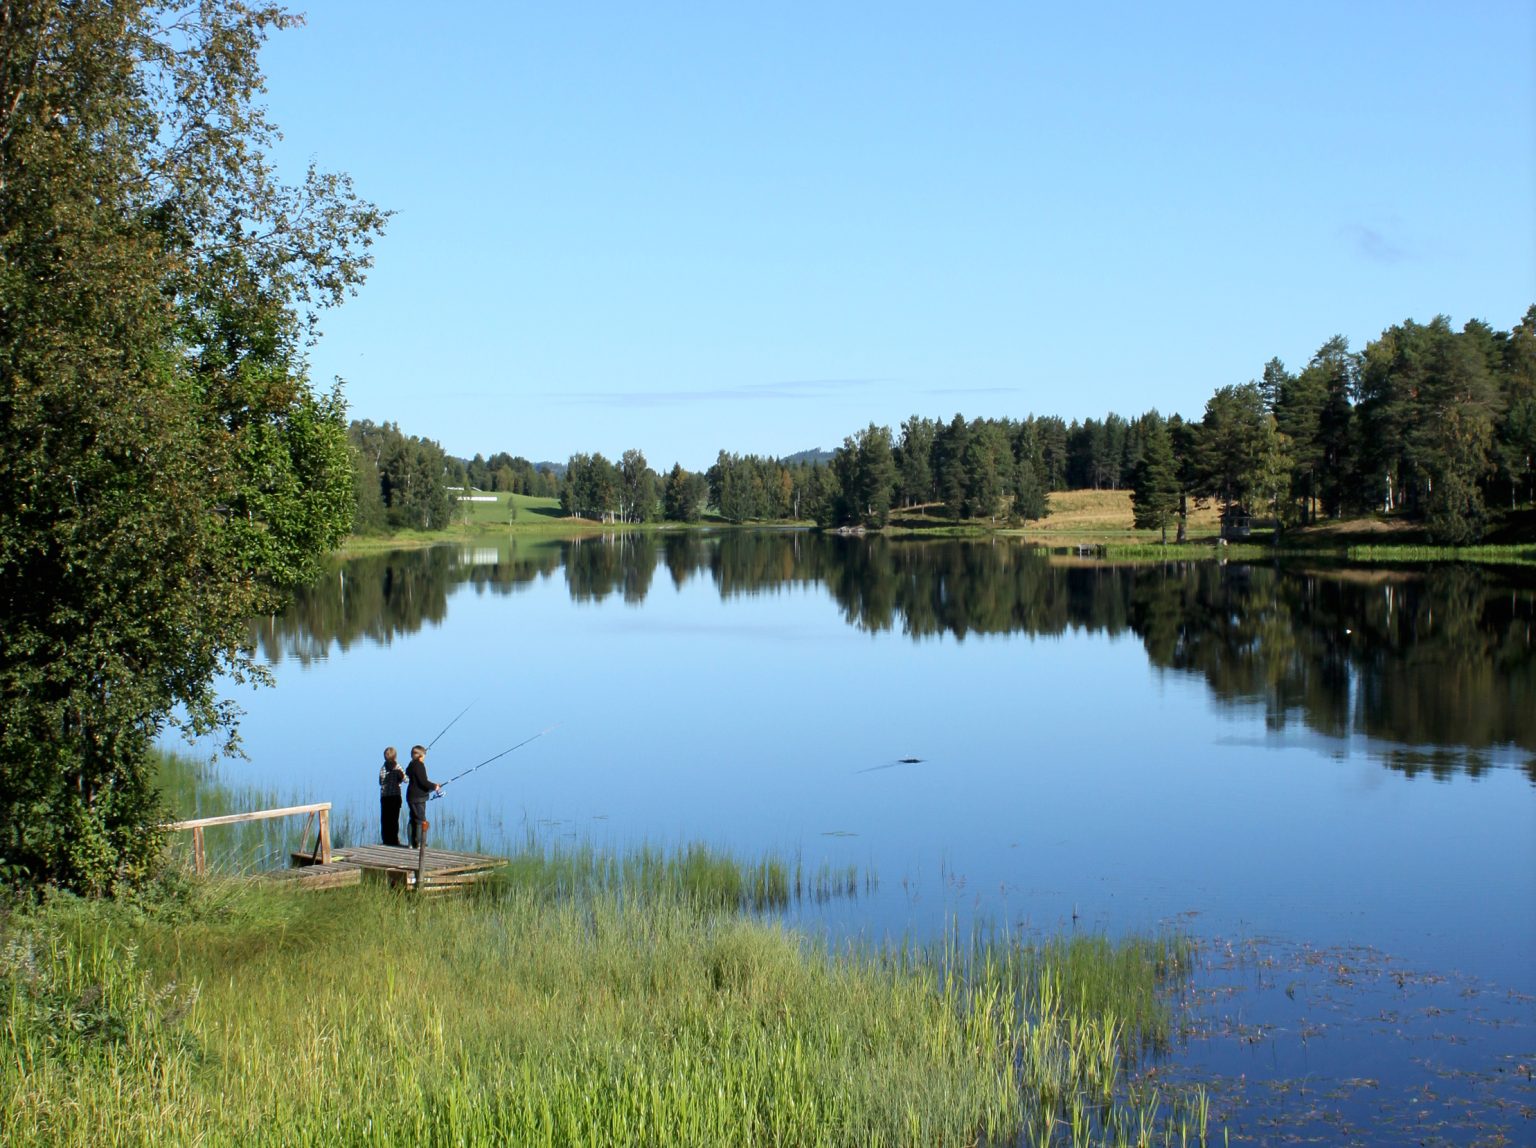 Två barn står på en brygga och fiskar vid en spegelblank sjö.